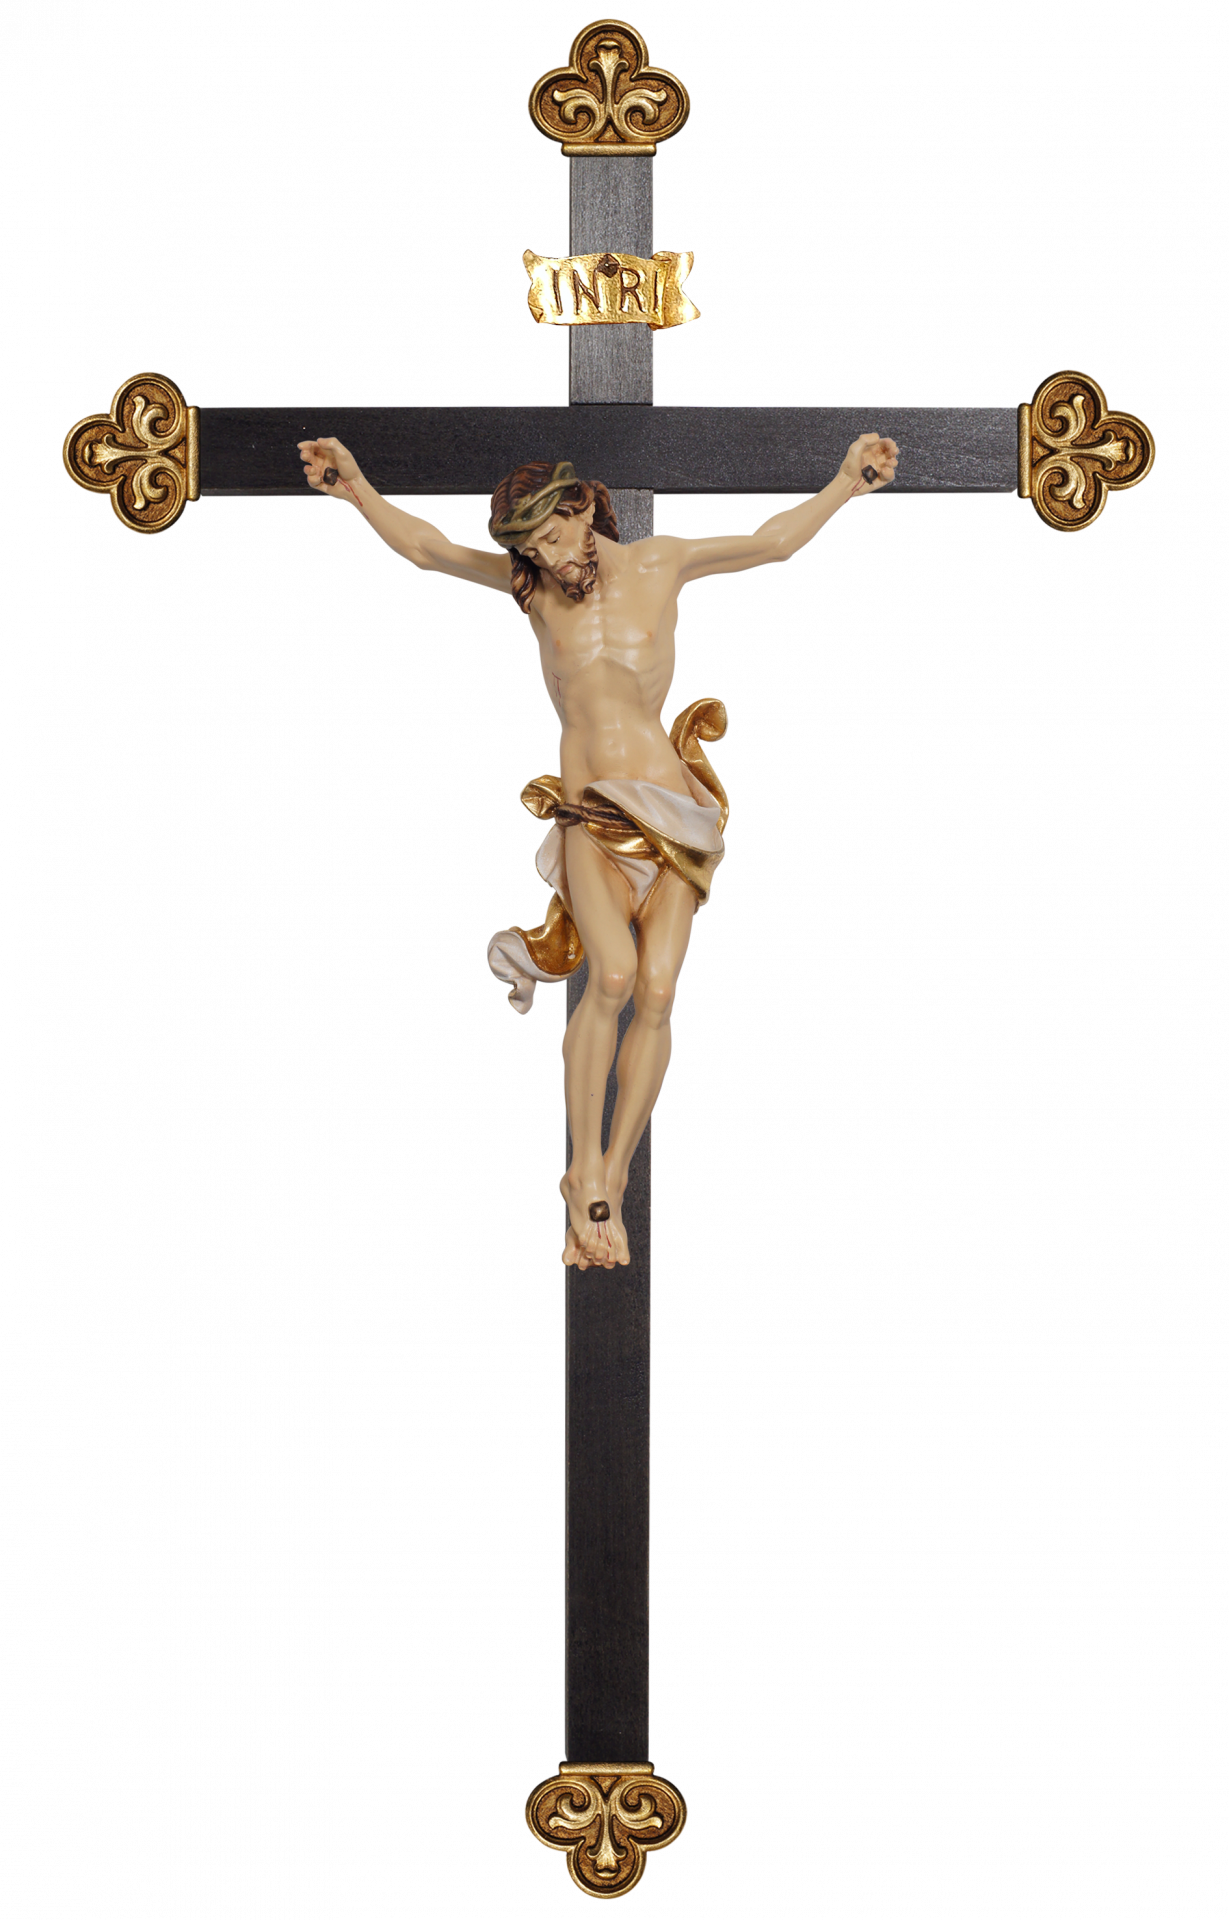 Corpus Leonardo-cross baroque